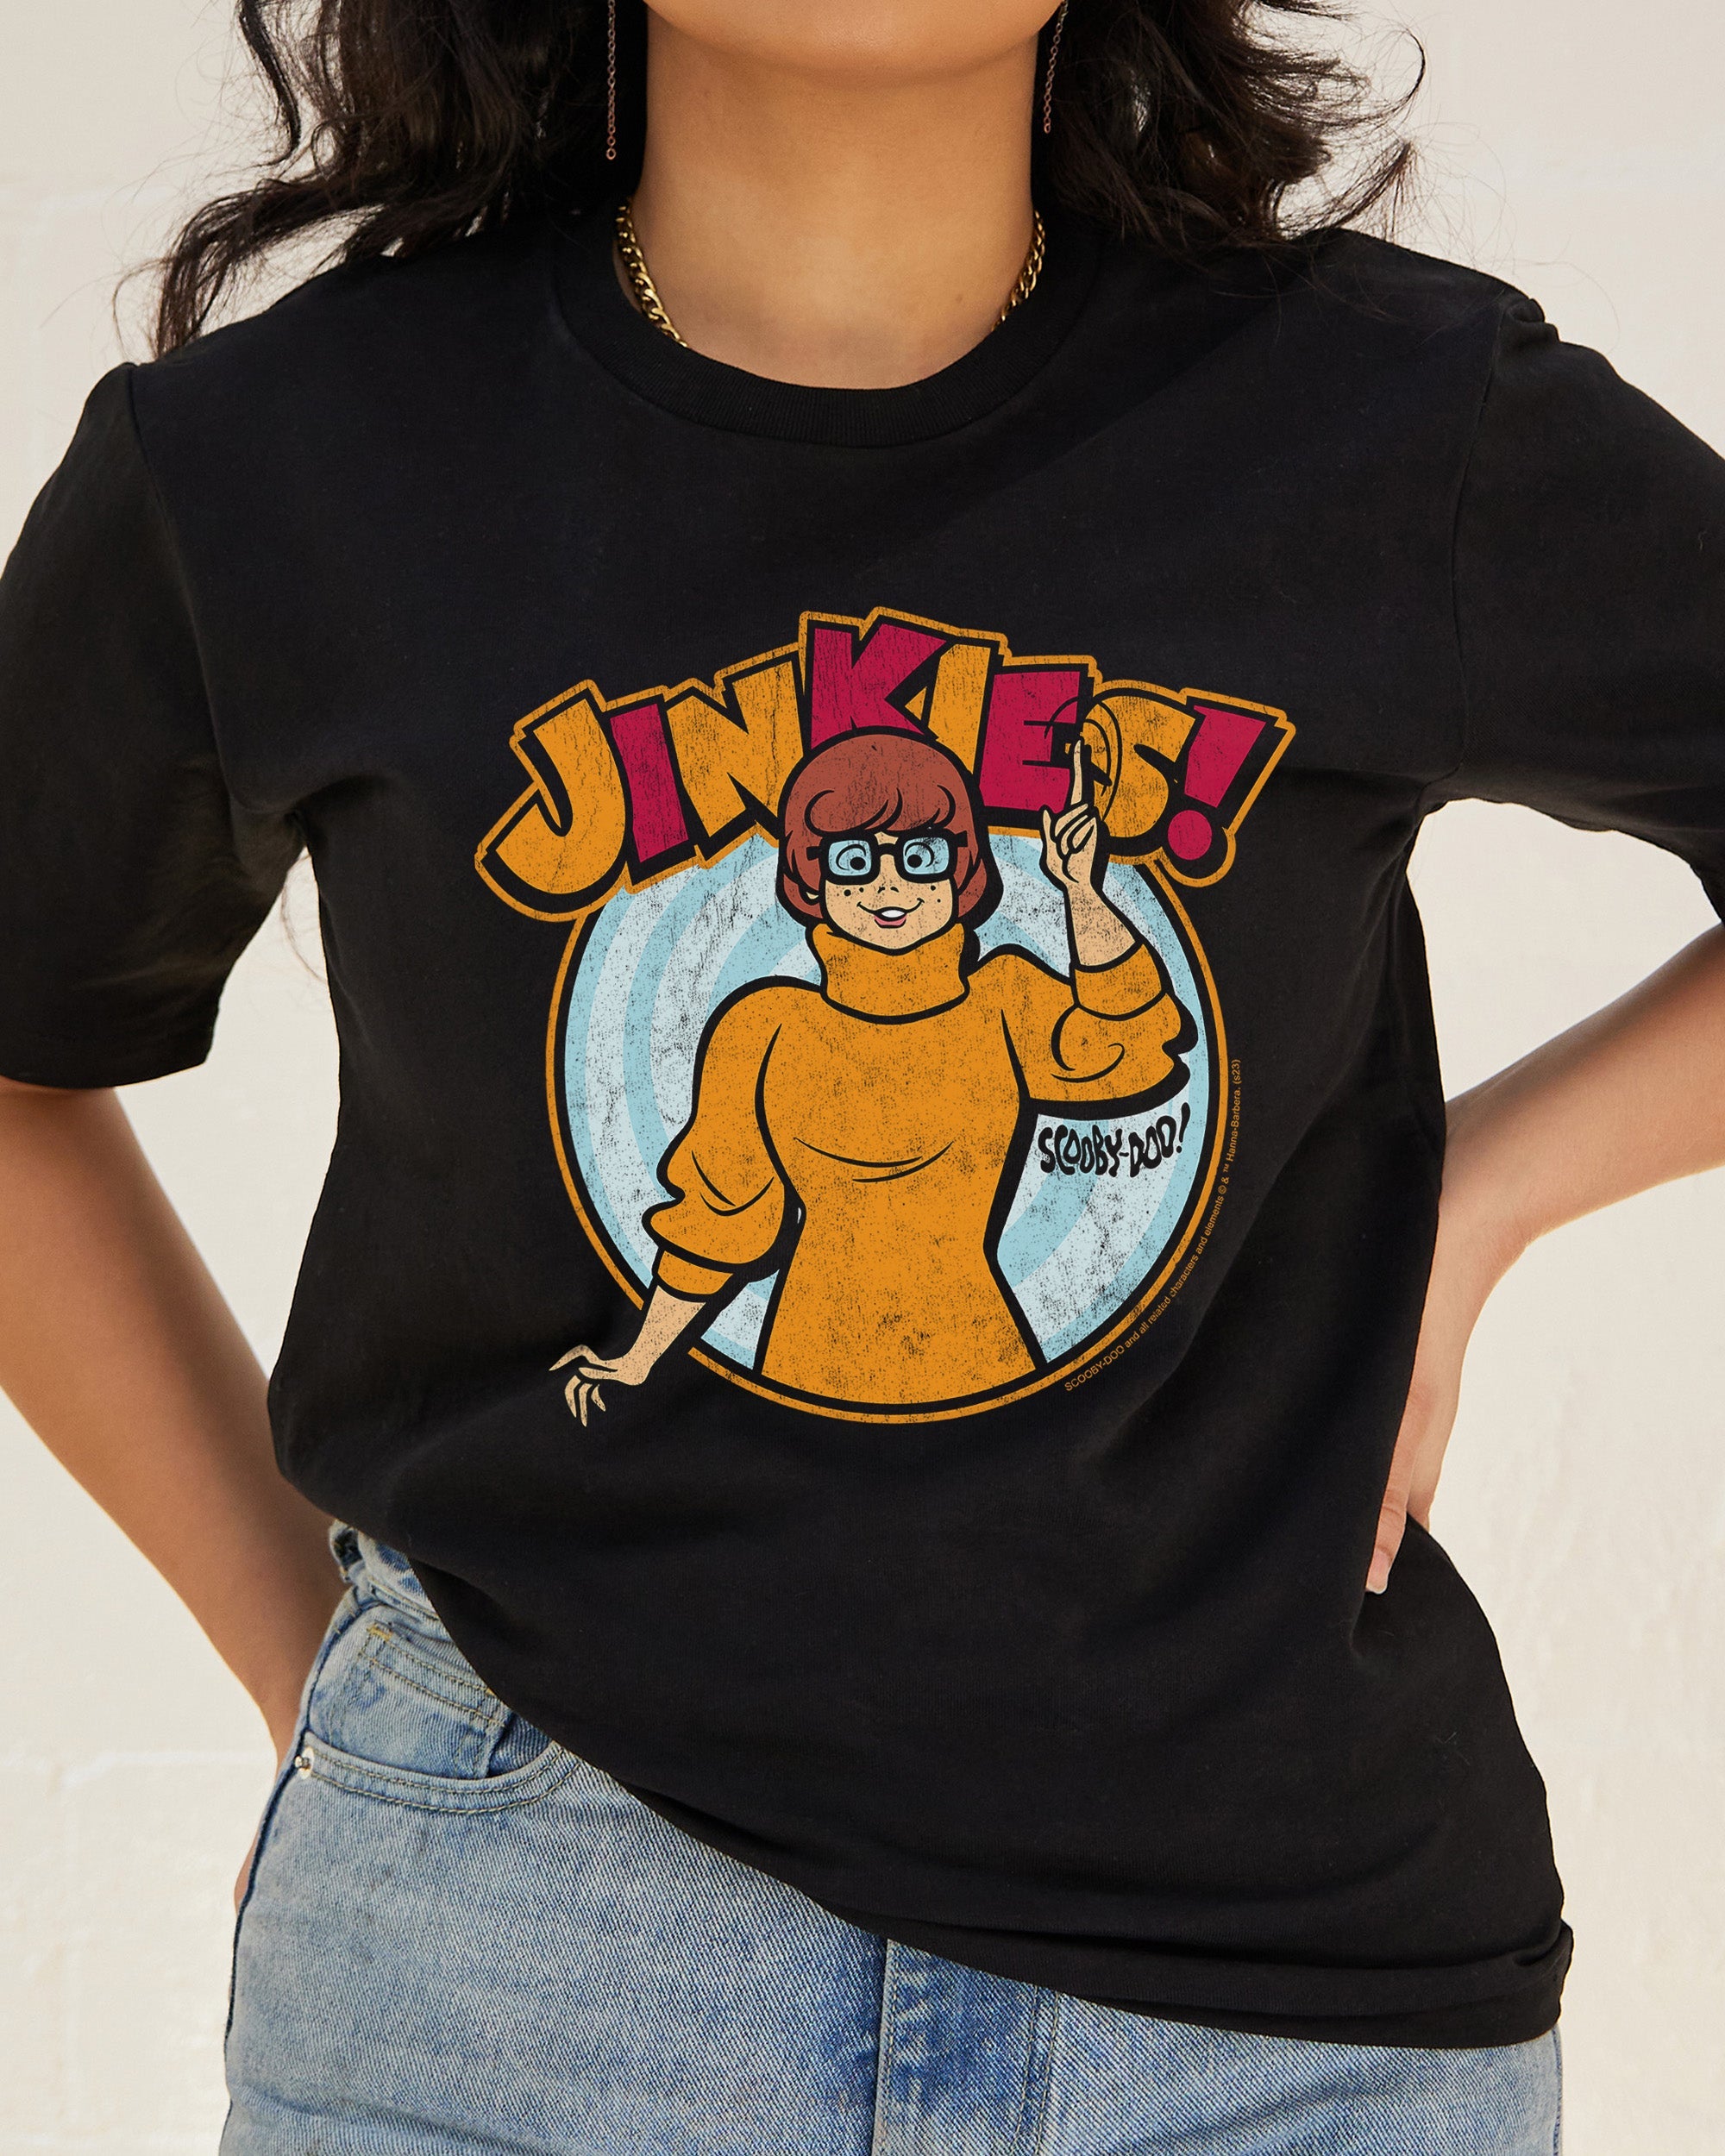 Jinkies T-Shirt Australia Online Black